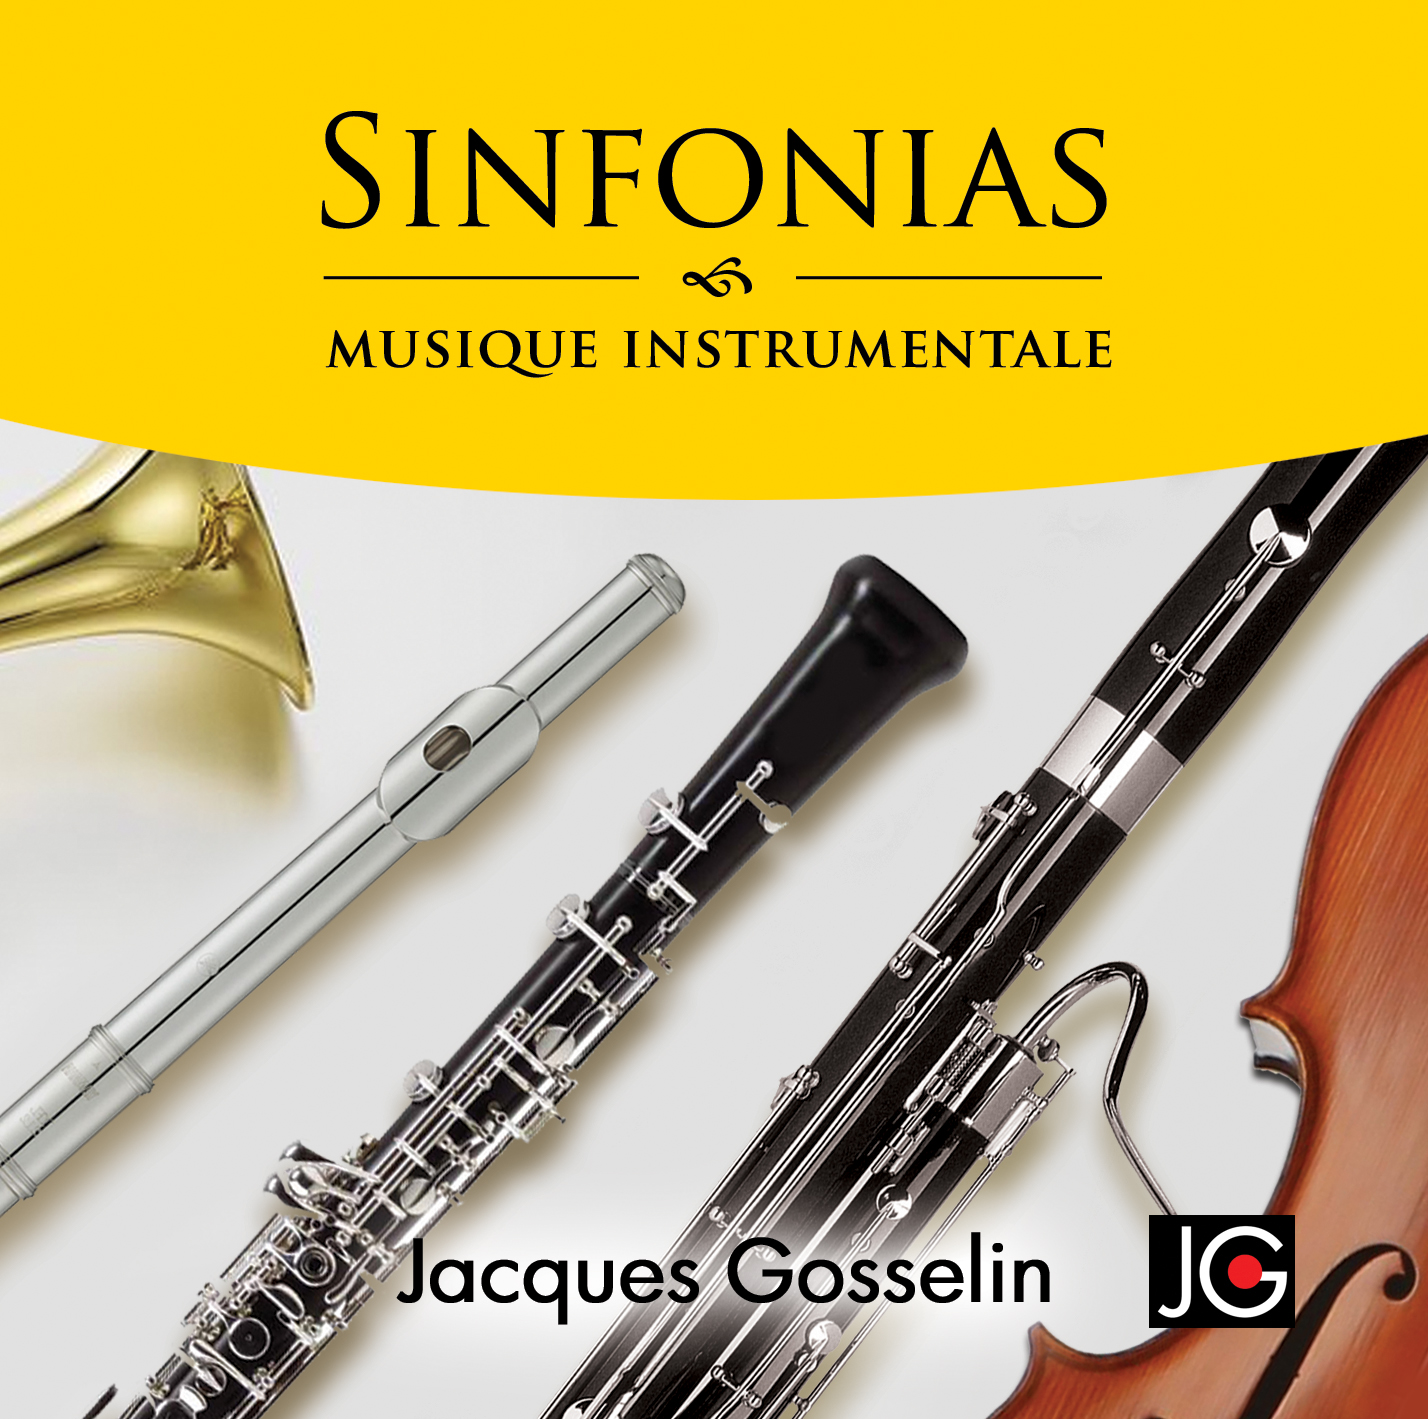 Image album Sinfonias de Jacques Gosselin